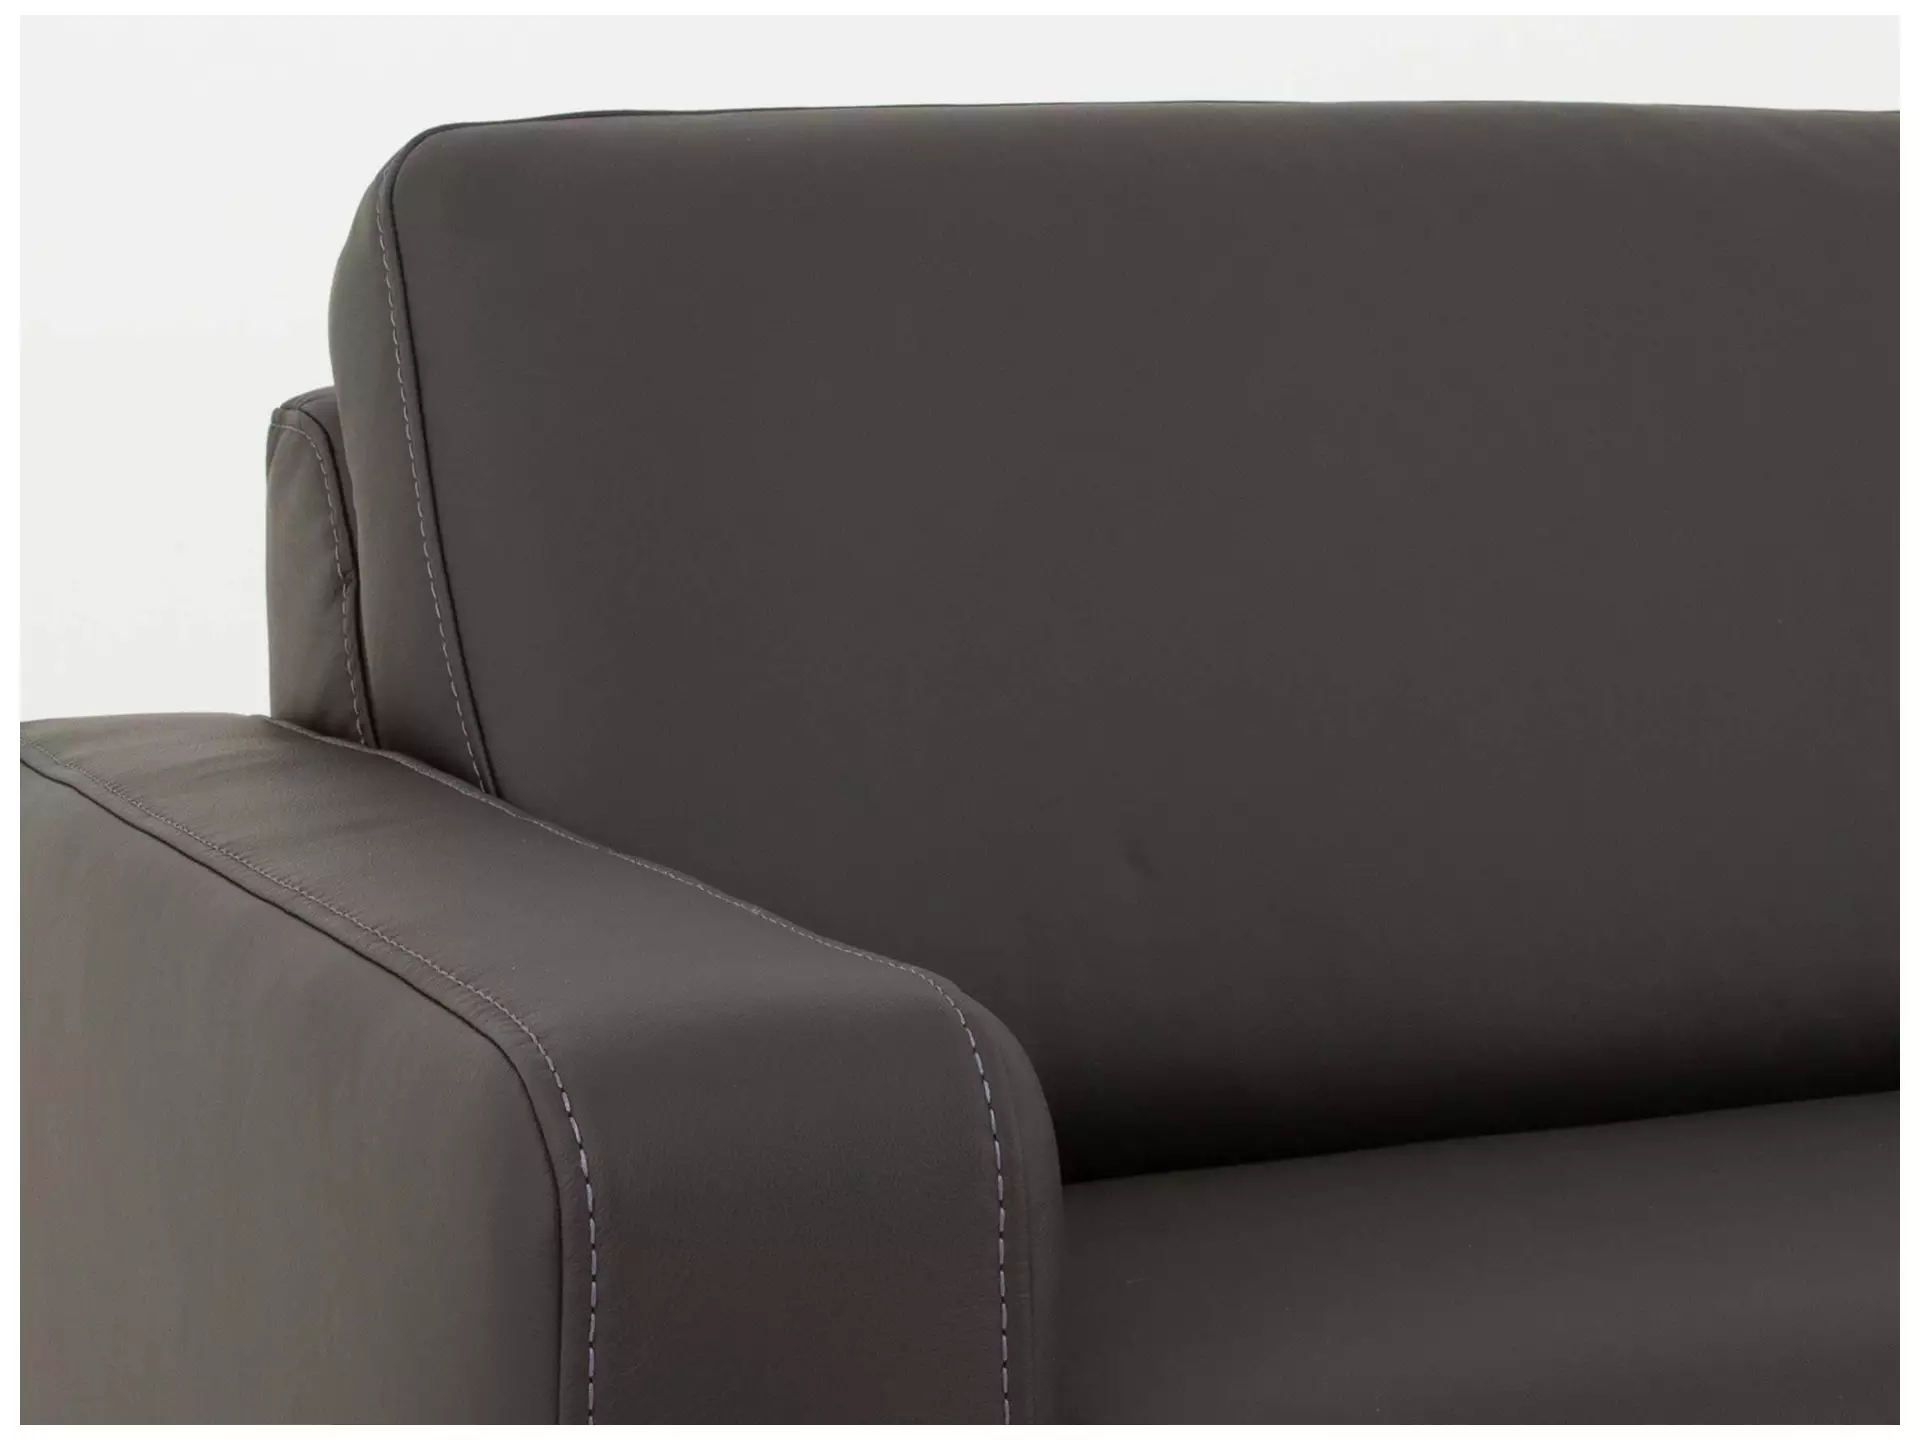 Sofa Shetland B: 214 cm Polipol / Farbe: Anthrazit / Bezugsmaterial: Leder